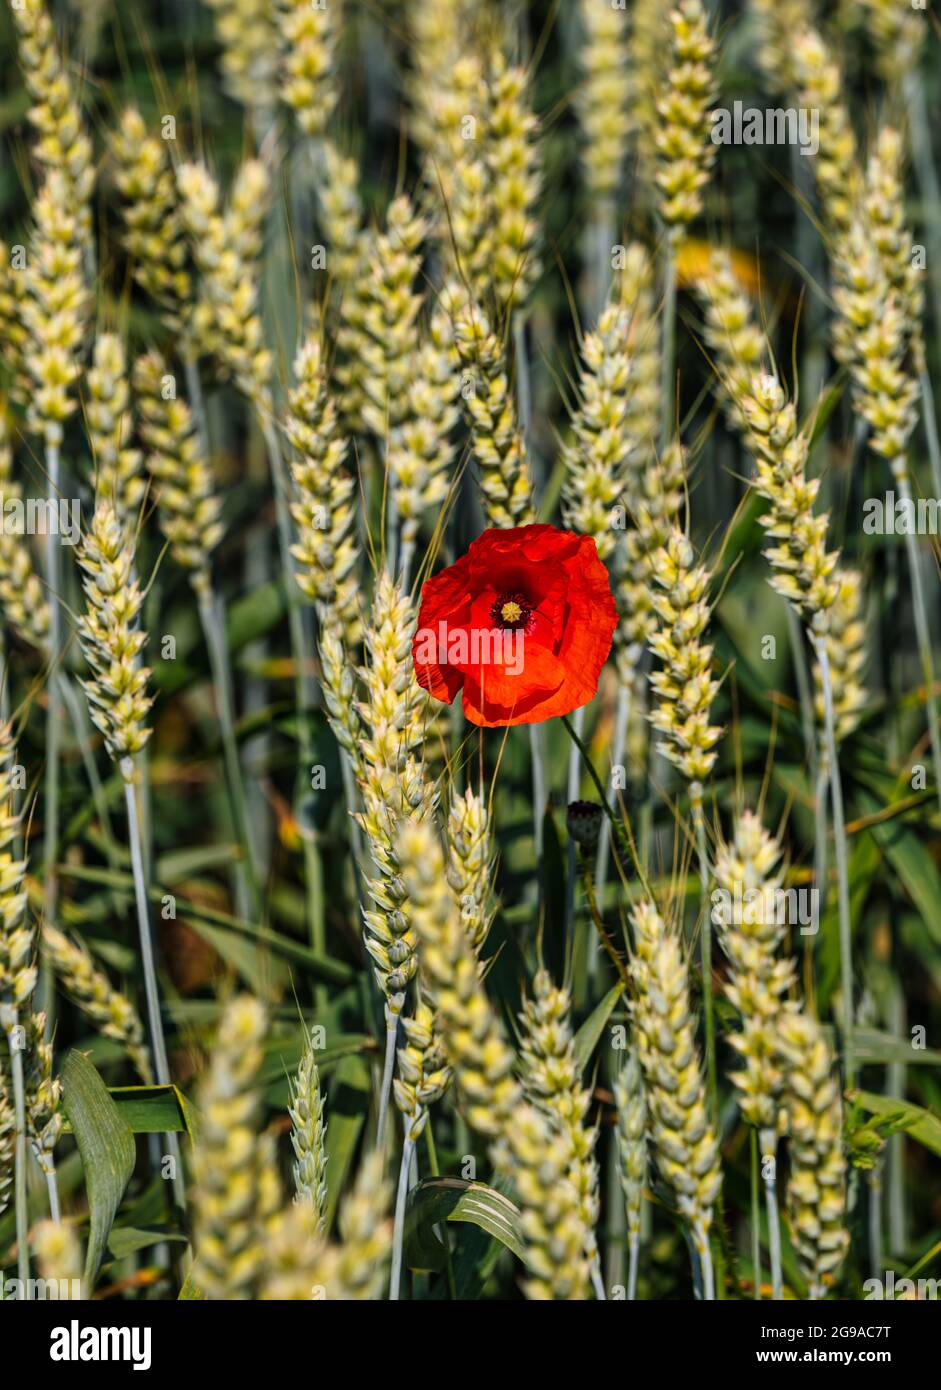 Maïs unique, pavot rouge rose croissant parmi les tiges de blé dans un champ de culture en été Sunshine, East Lothian, Écosse, Royaume-Uni Banque D'Images